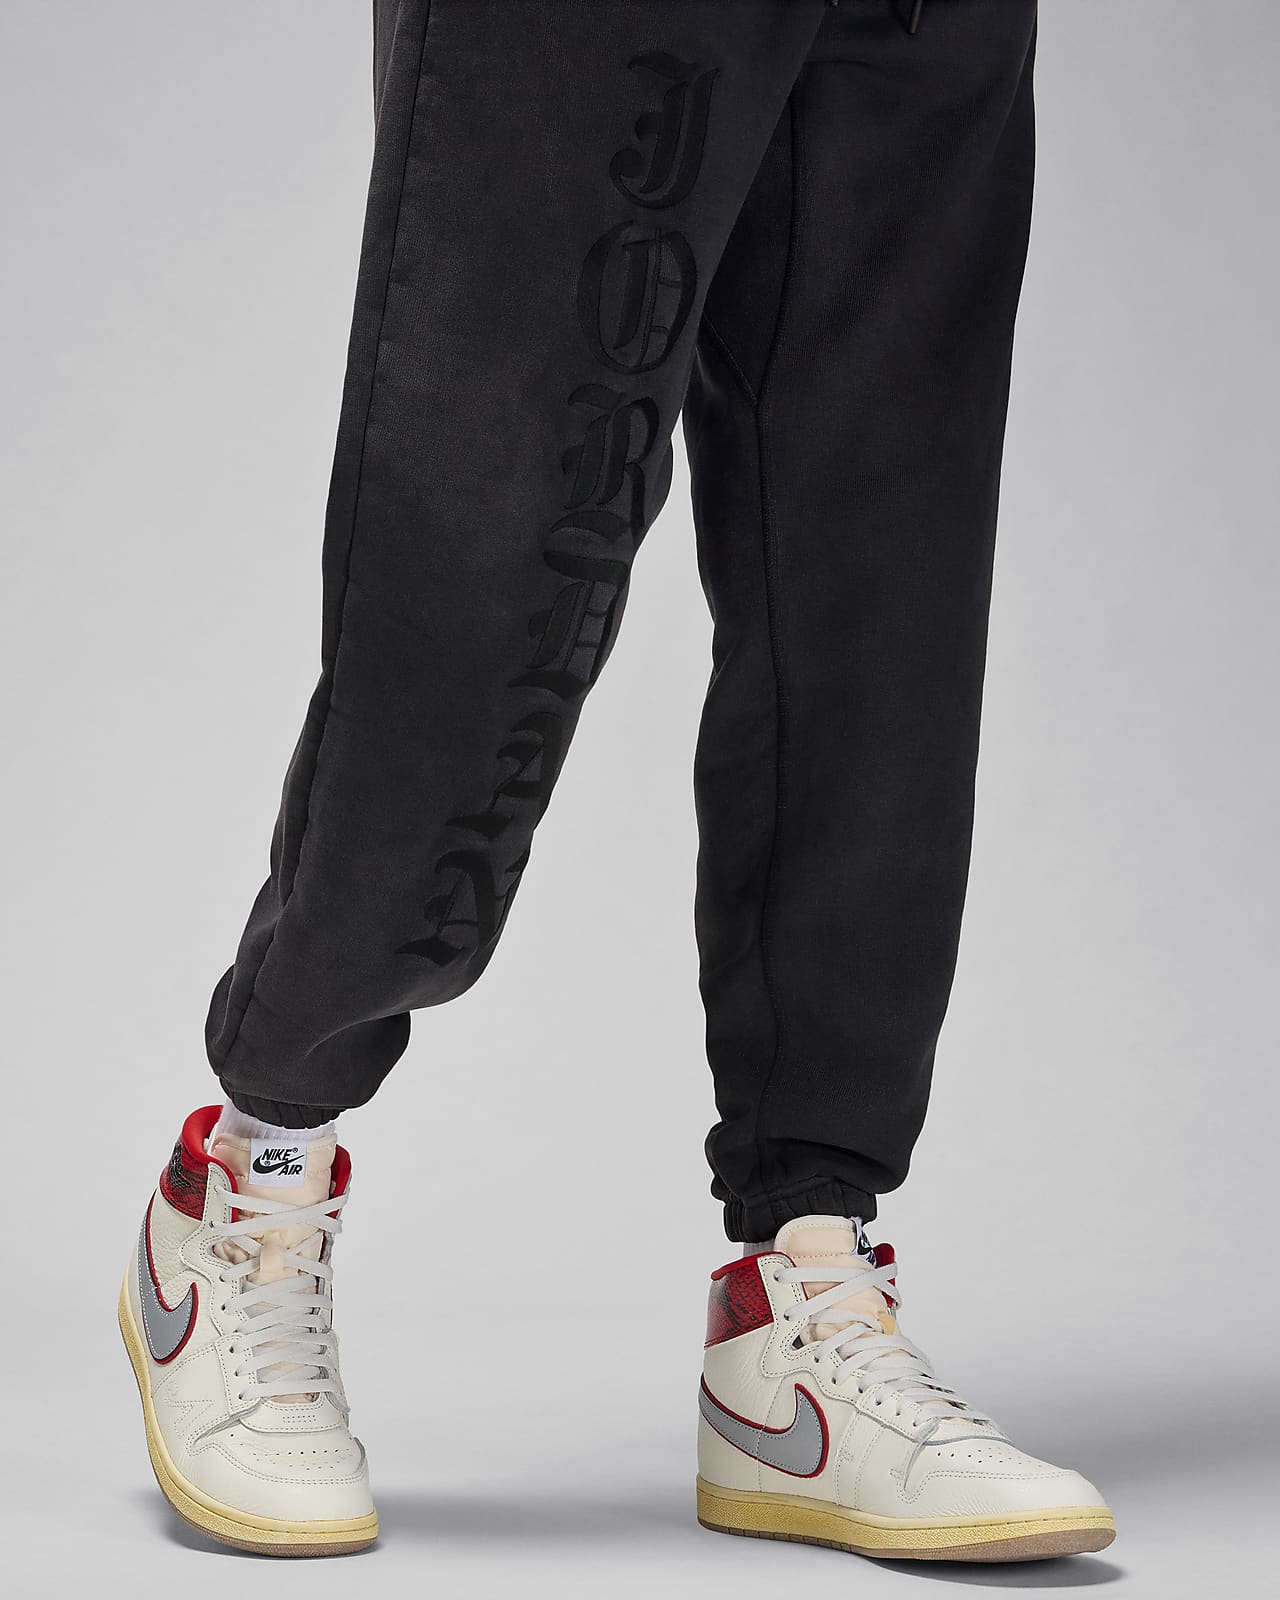 Mサイズ新品ですAwake NY Jordan Nike Airship pants パンツ